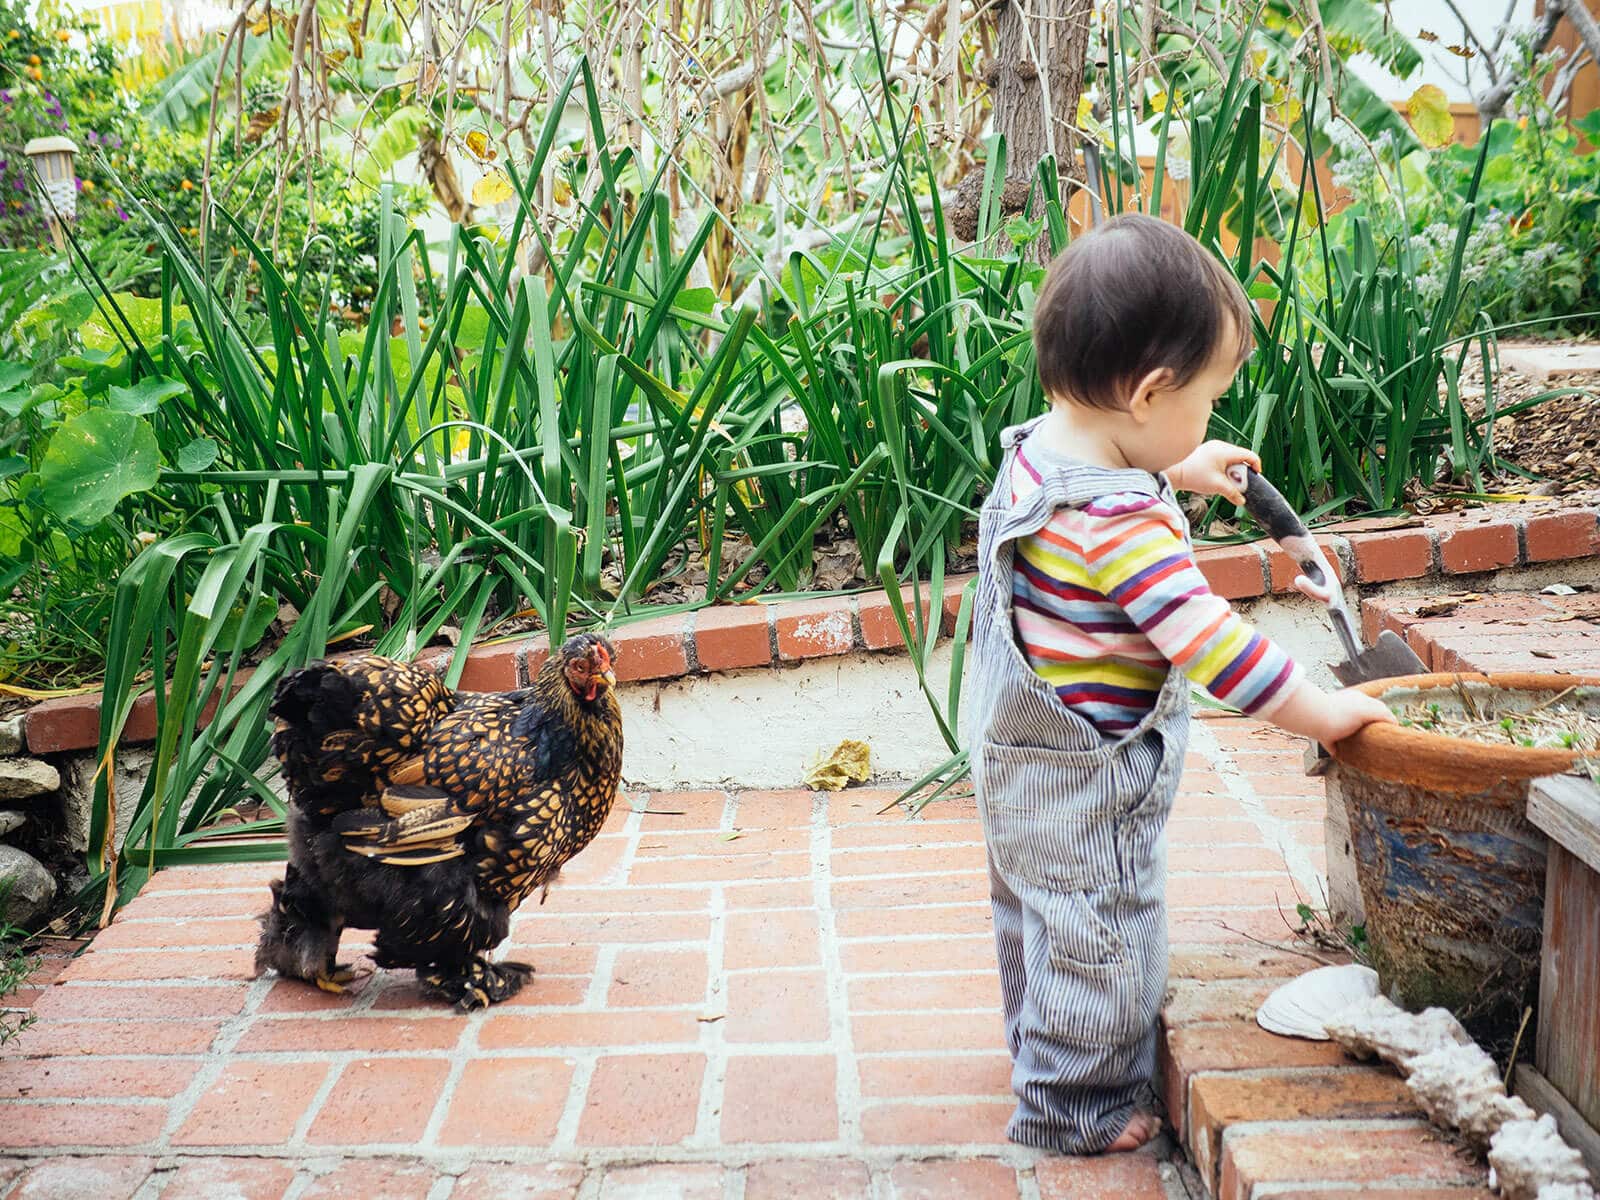 Cochin hen walking behind a toddler in the garden